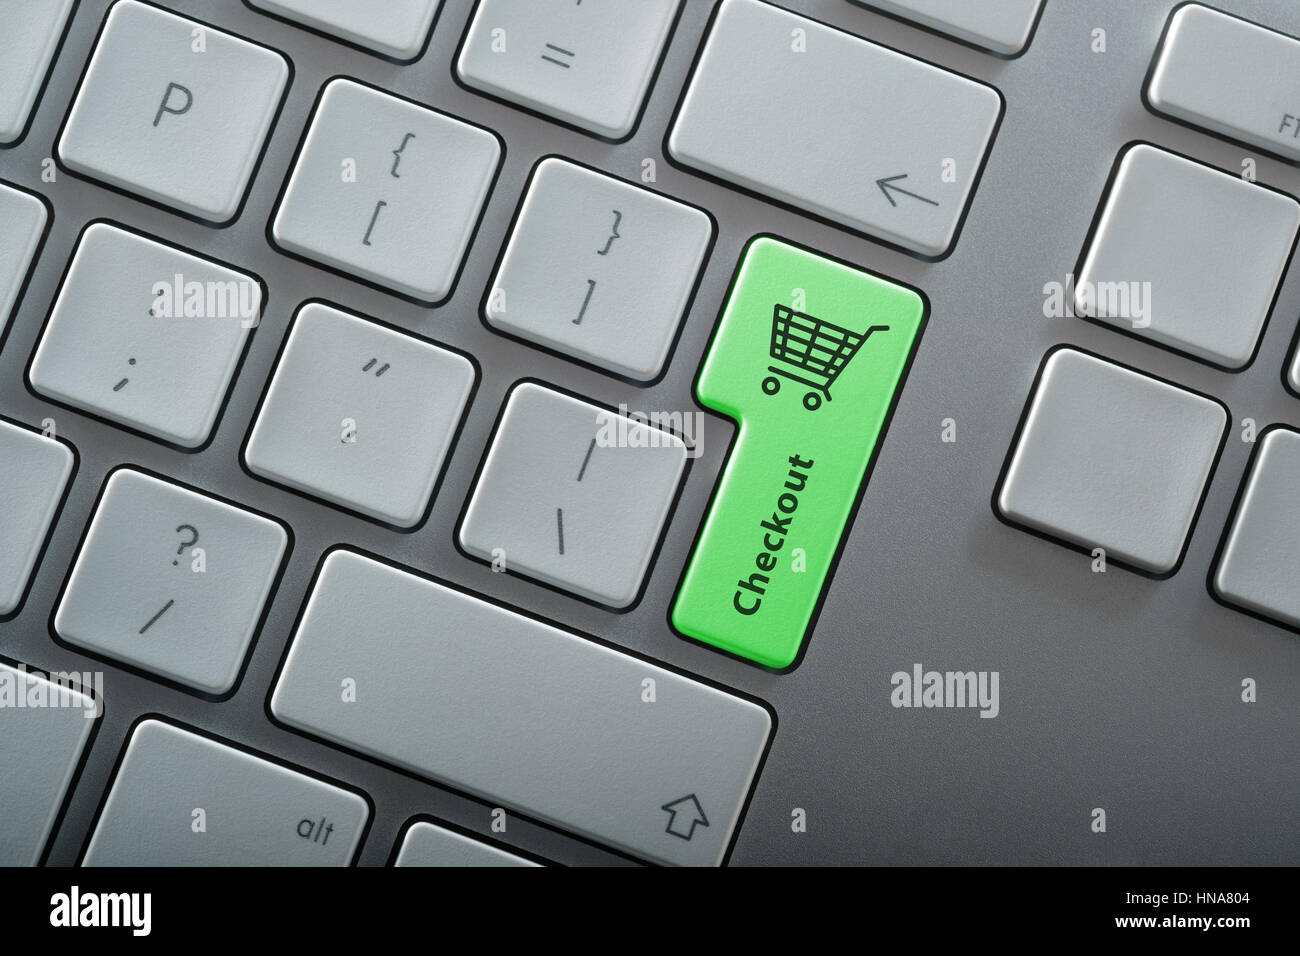 Shopping on line - tastiera di computer con chiave di checkout Foto Stock